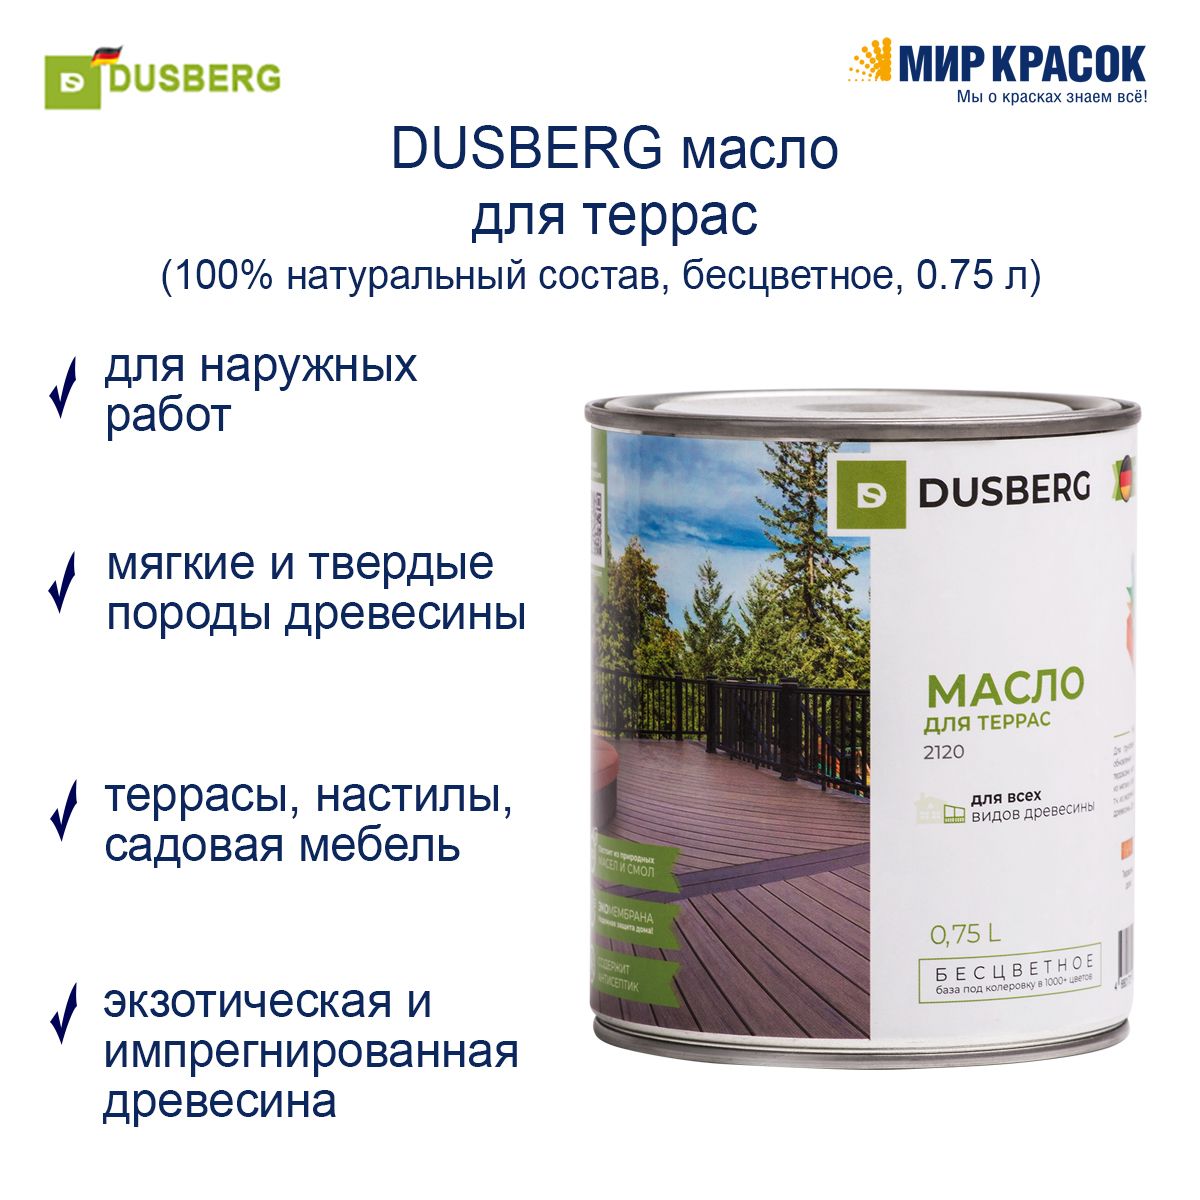 Масло dusberg. Dusberg 2120 масло для террас. 2120 Dusberg масло для террас, 2 л, шт. Dusberg масло для дерева. Dusberg / Дюсберг масло для террас.